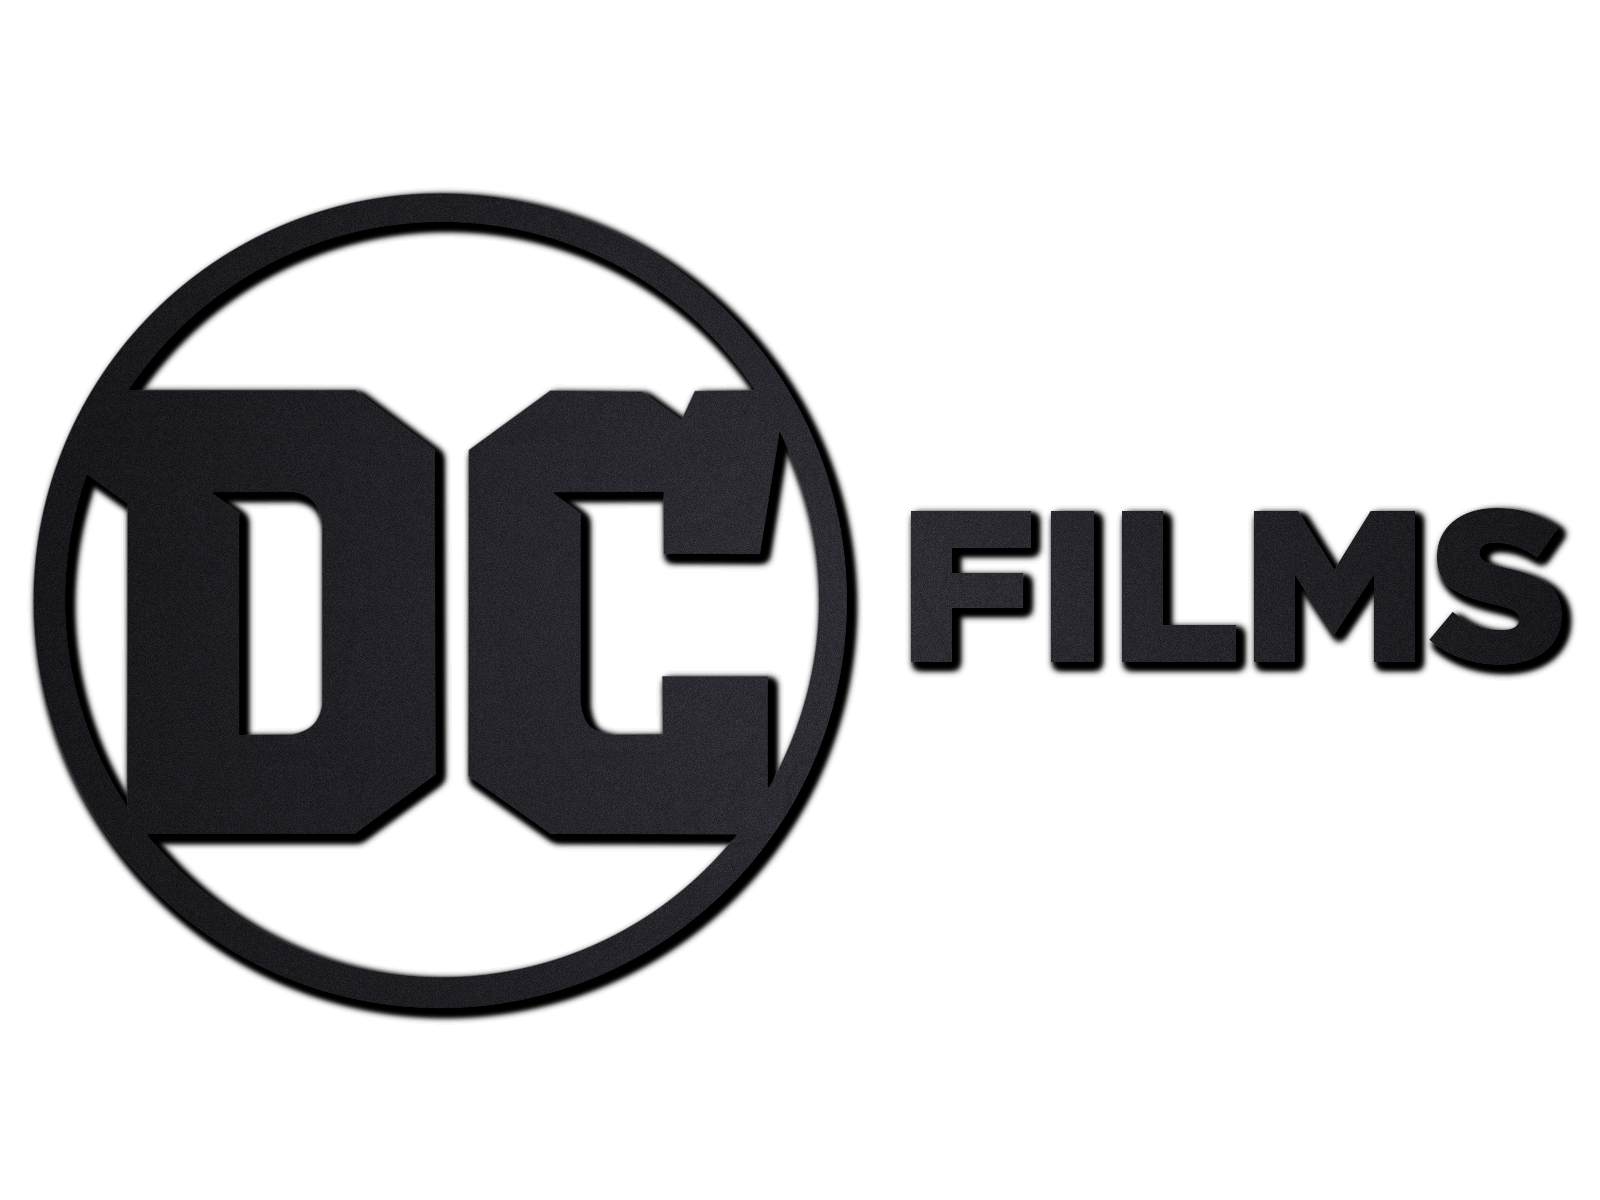 DC Films